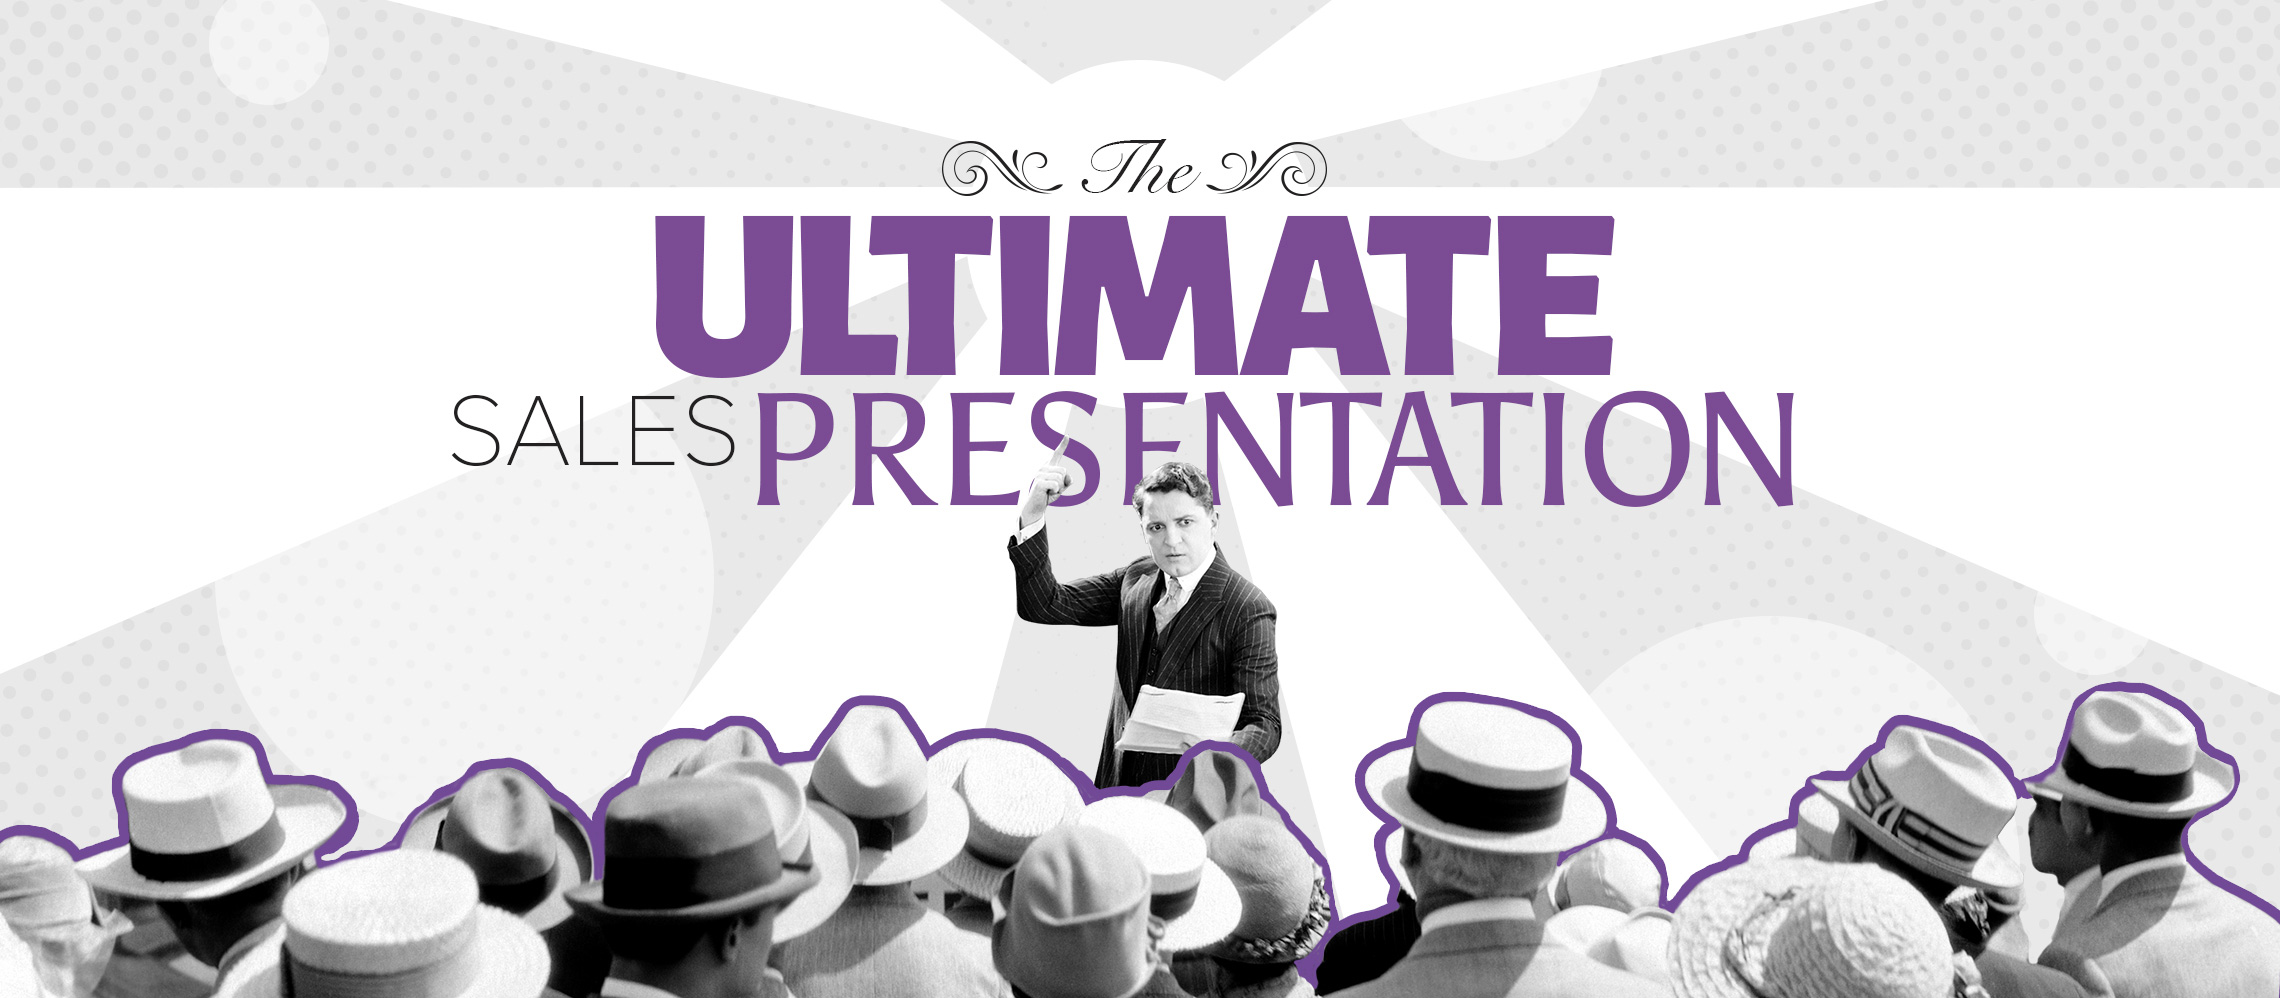 deliver a sales presentation